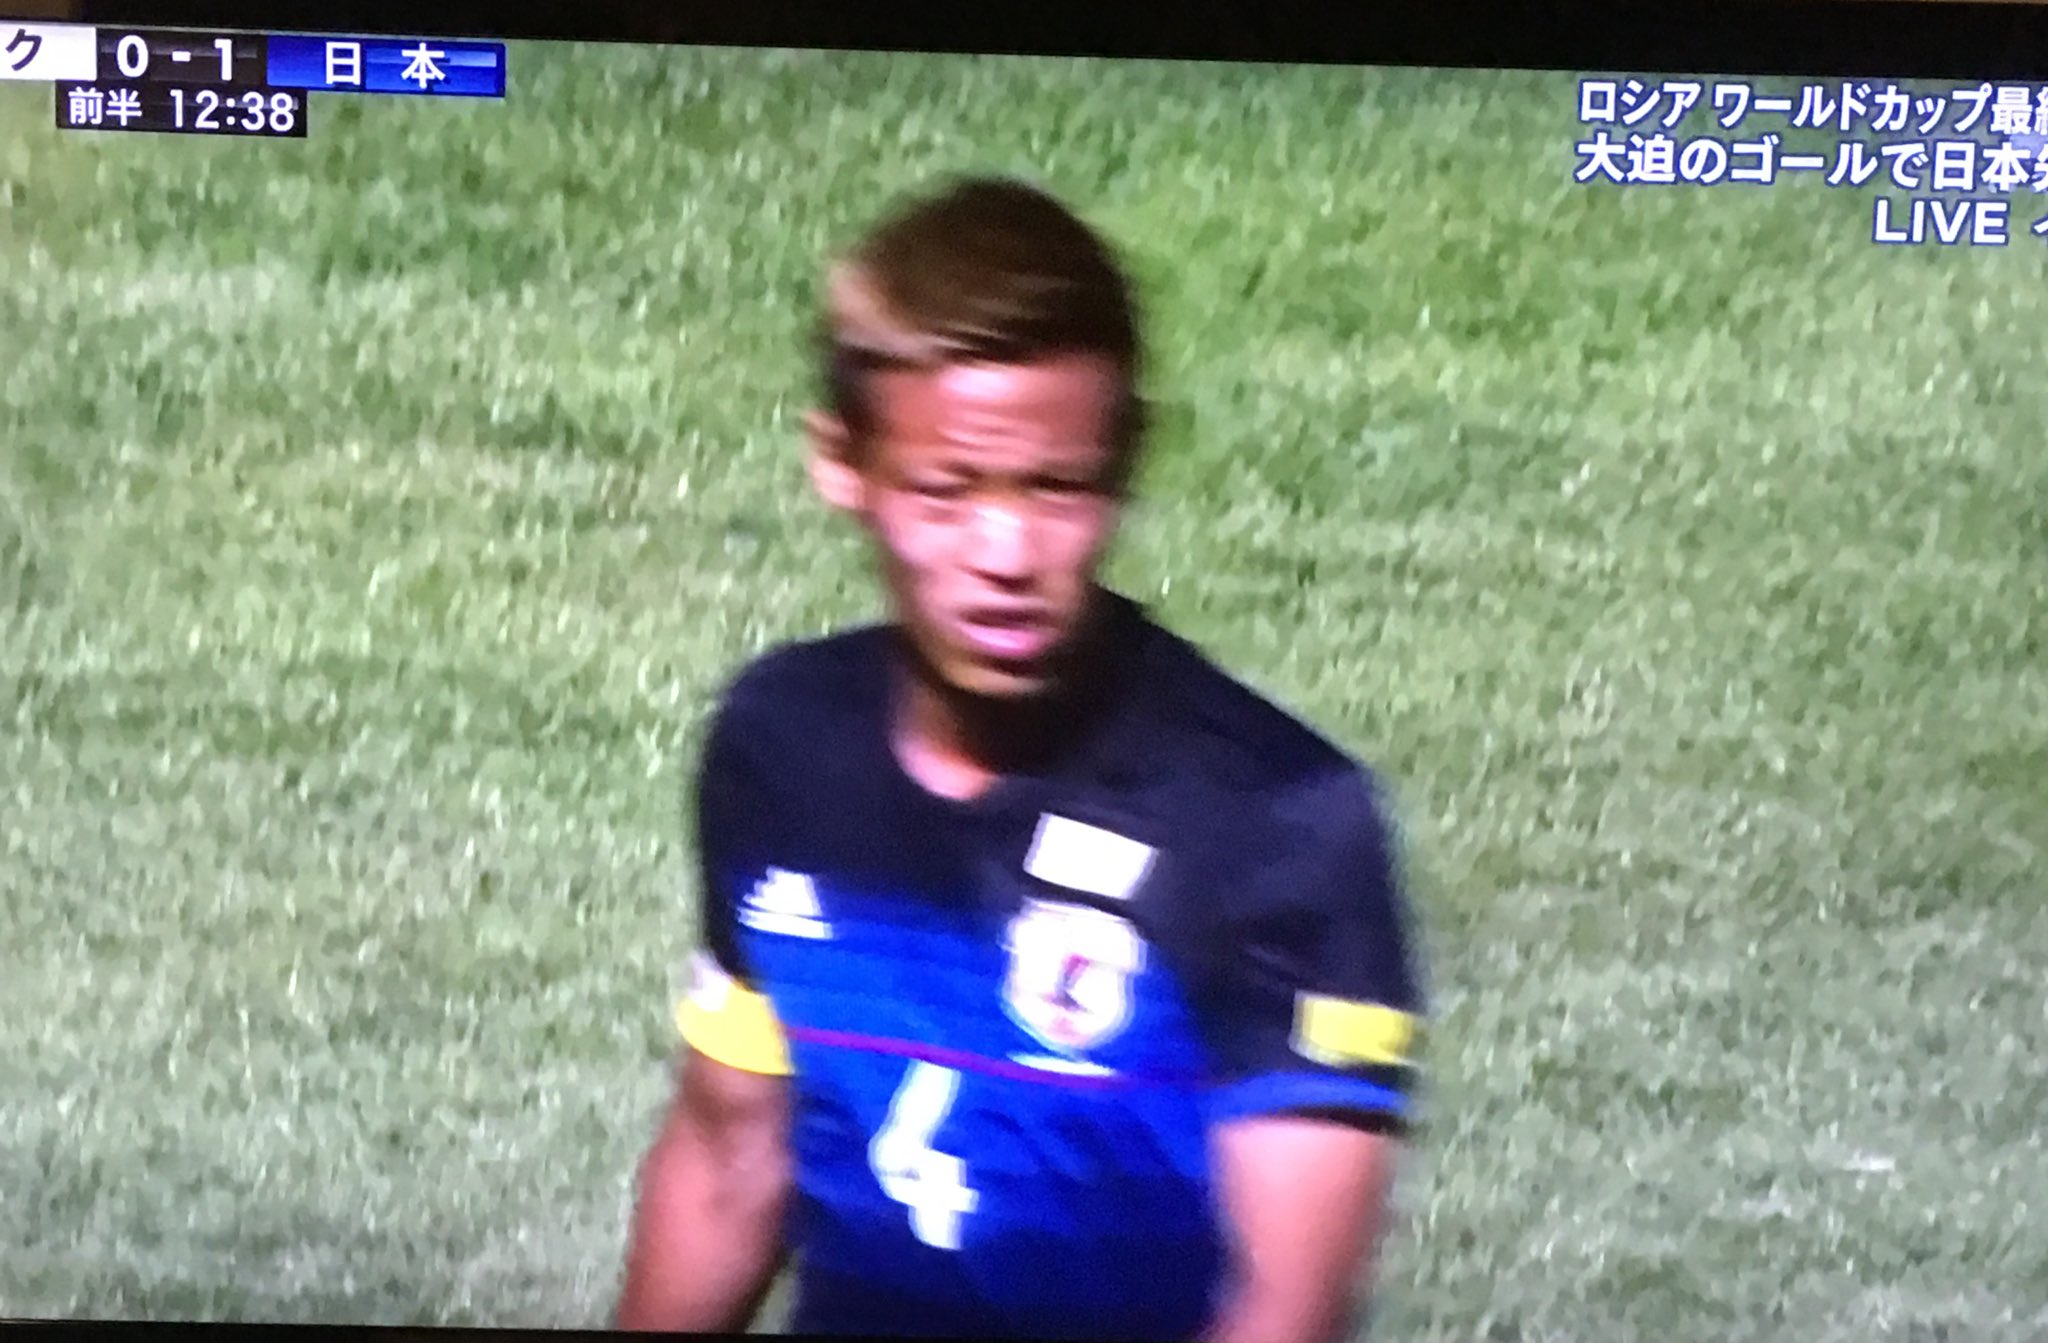 まさ キャプテンマークとワールドカップマーク 分かりづらい 右腕がキャプテンマークか 赤か白がなかったのかな 日本代表 サッカー キャプテンマーク T Co Ls4ch8lnao Twitter